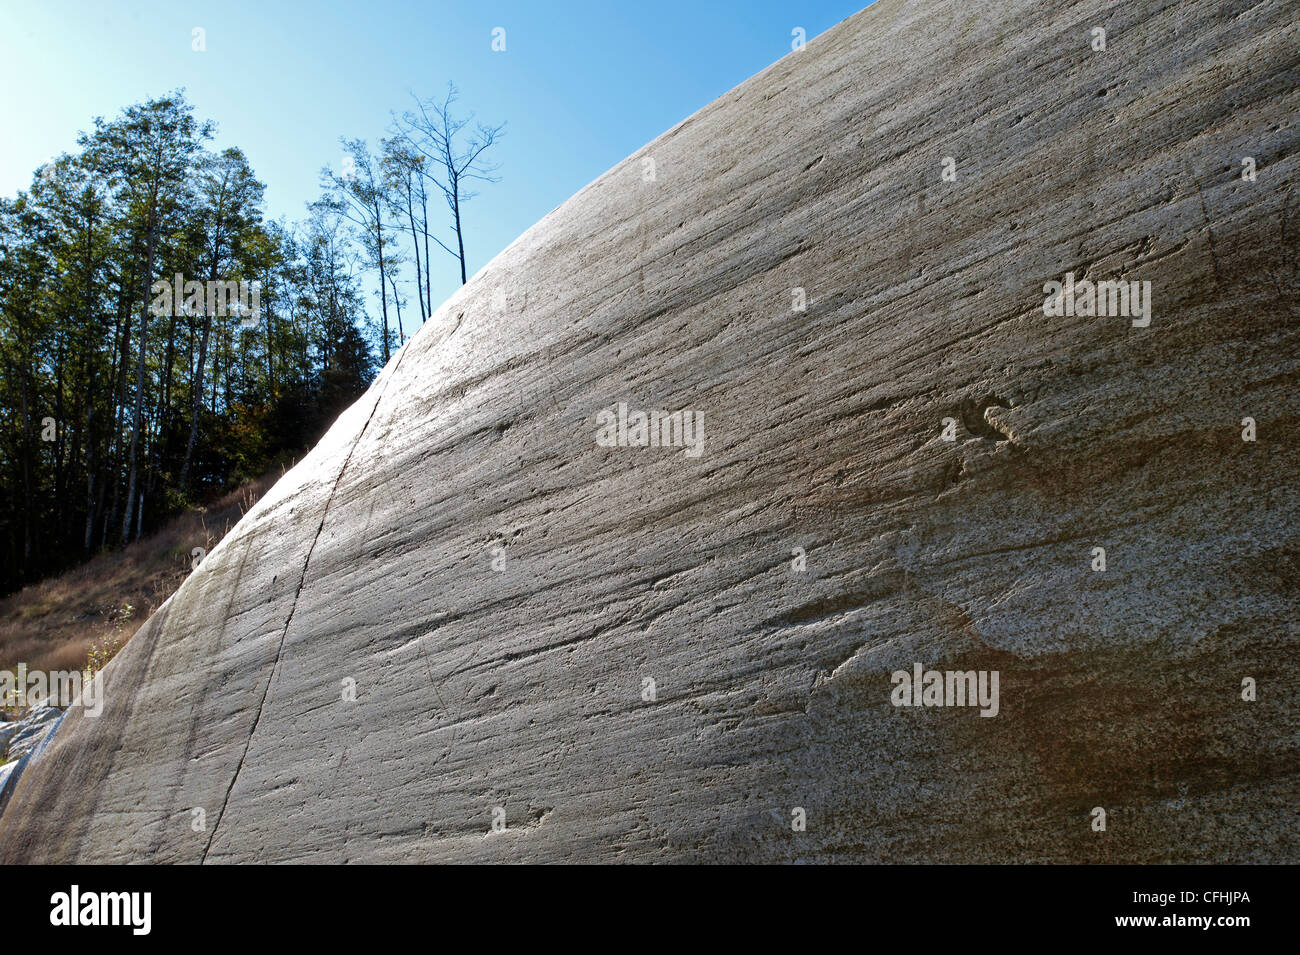 Pure granite rock Stock Photo